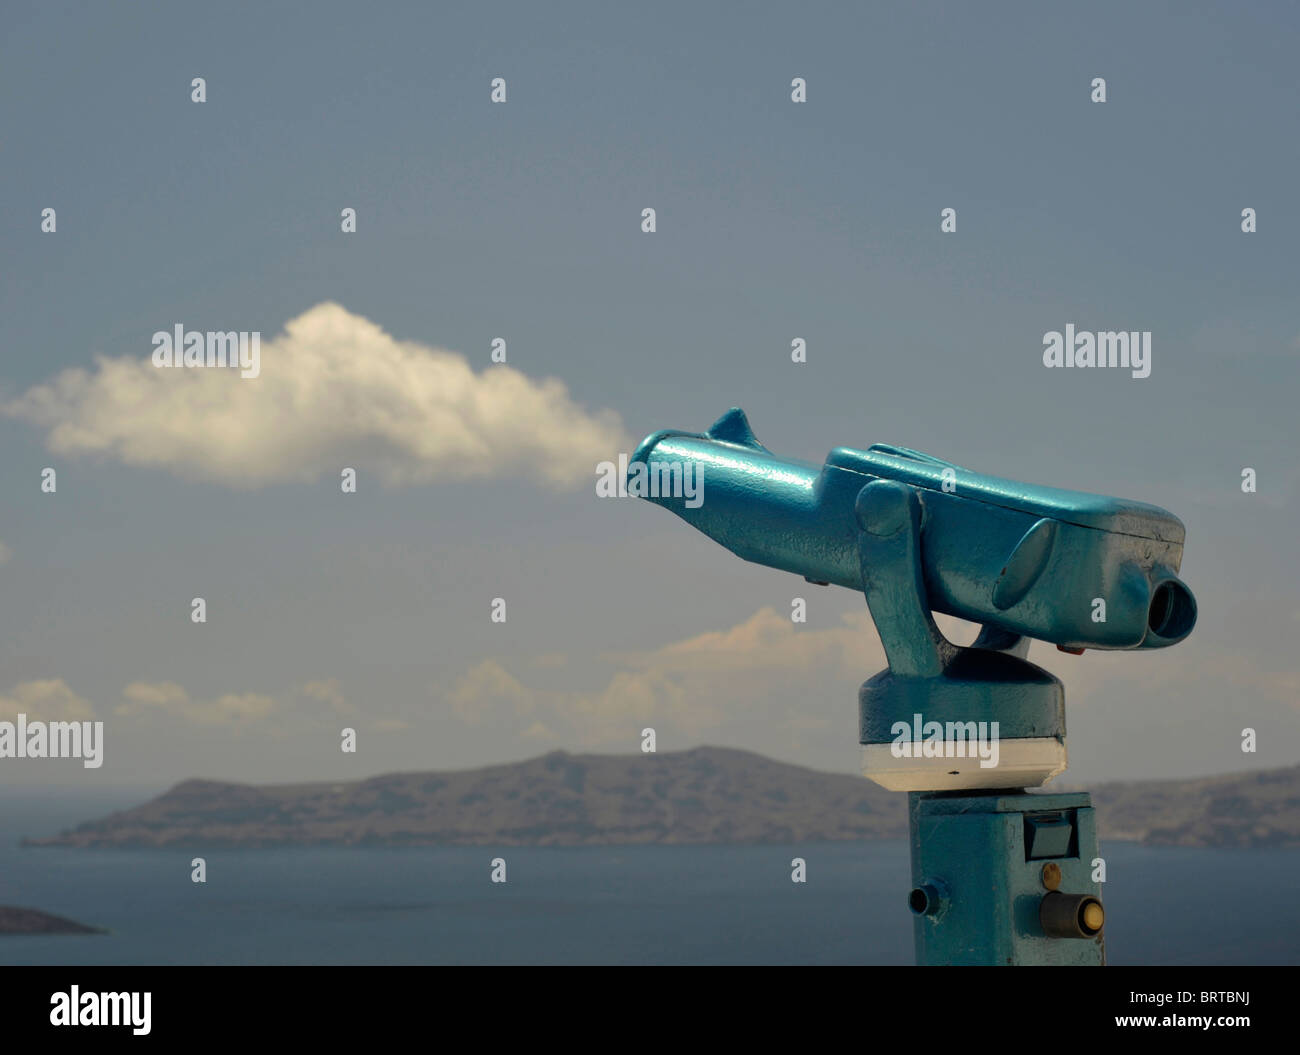 A gettone pay per view telescopio con vista sulla Caldera sull'isola greca di Santorini, appare anche come una pistola essendo sparati Foto Stock